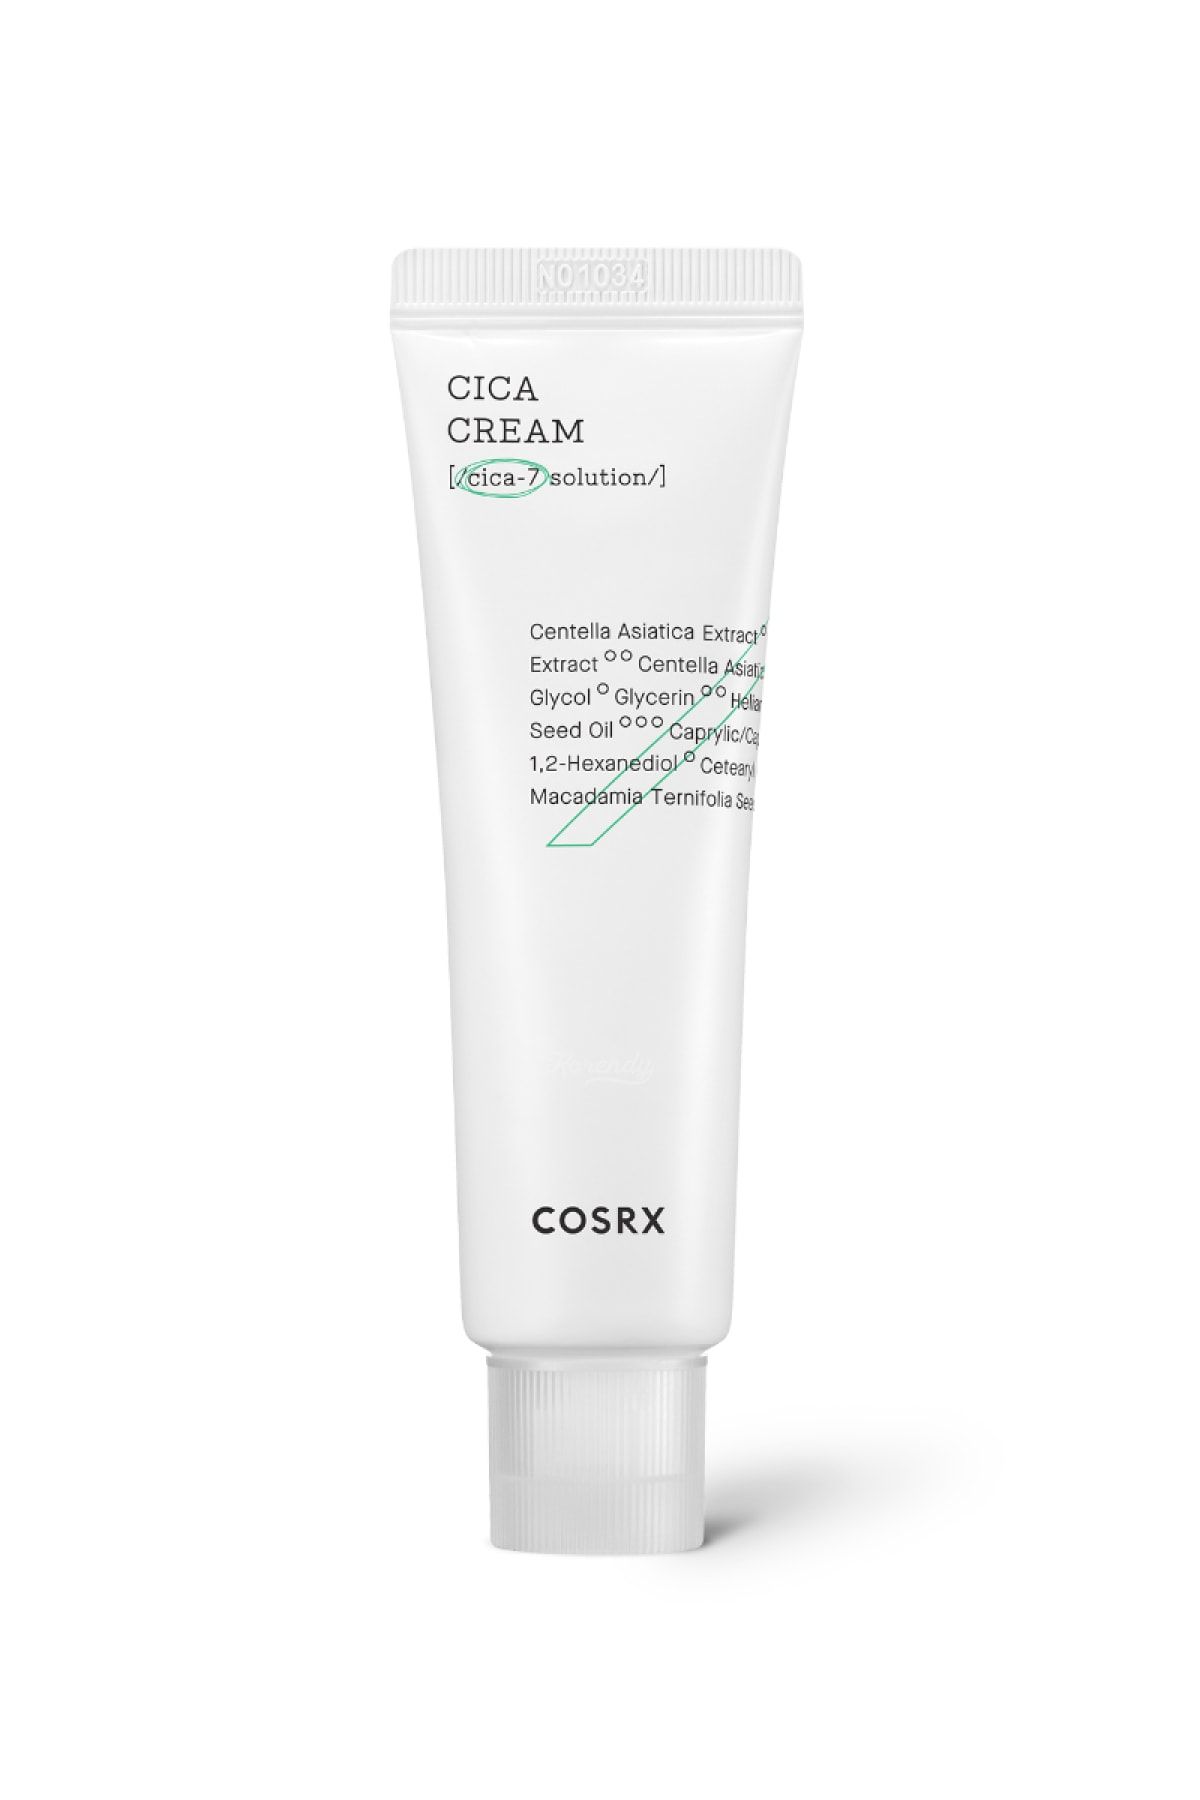 Cosrx Pure Fit Cica Cream - Sakinleştirici Cica Krem 50ml